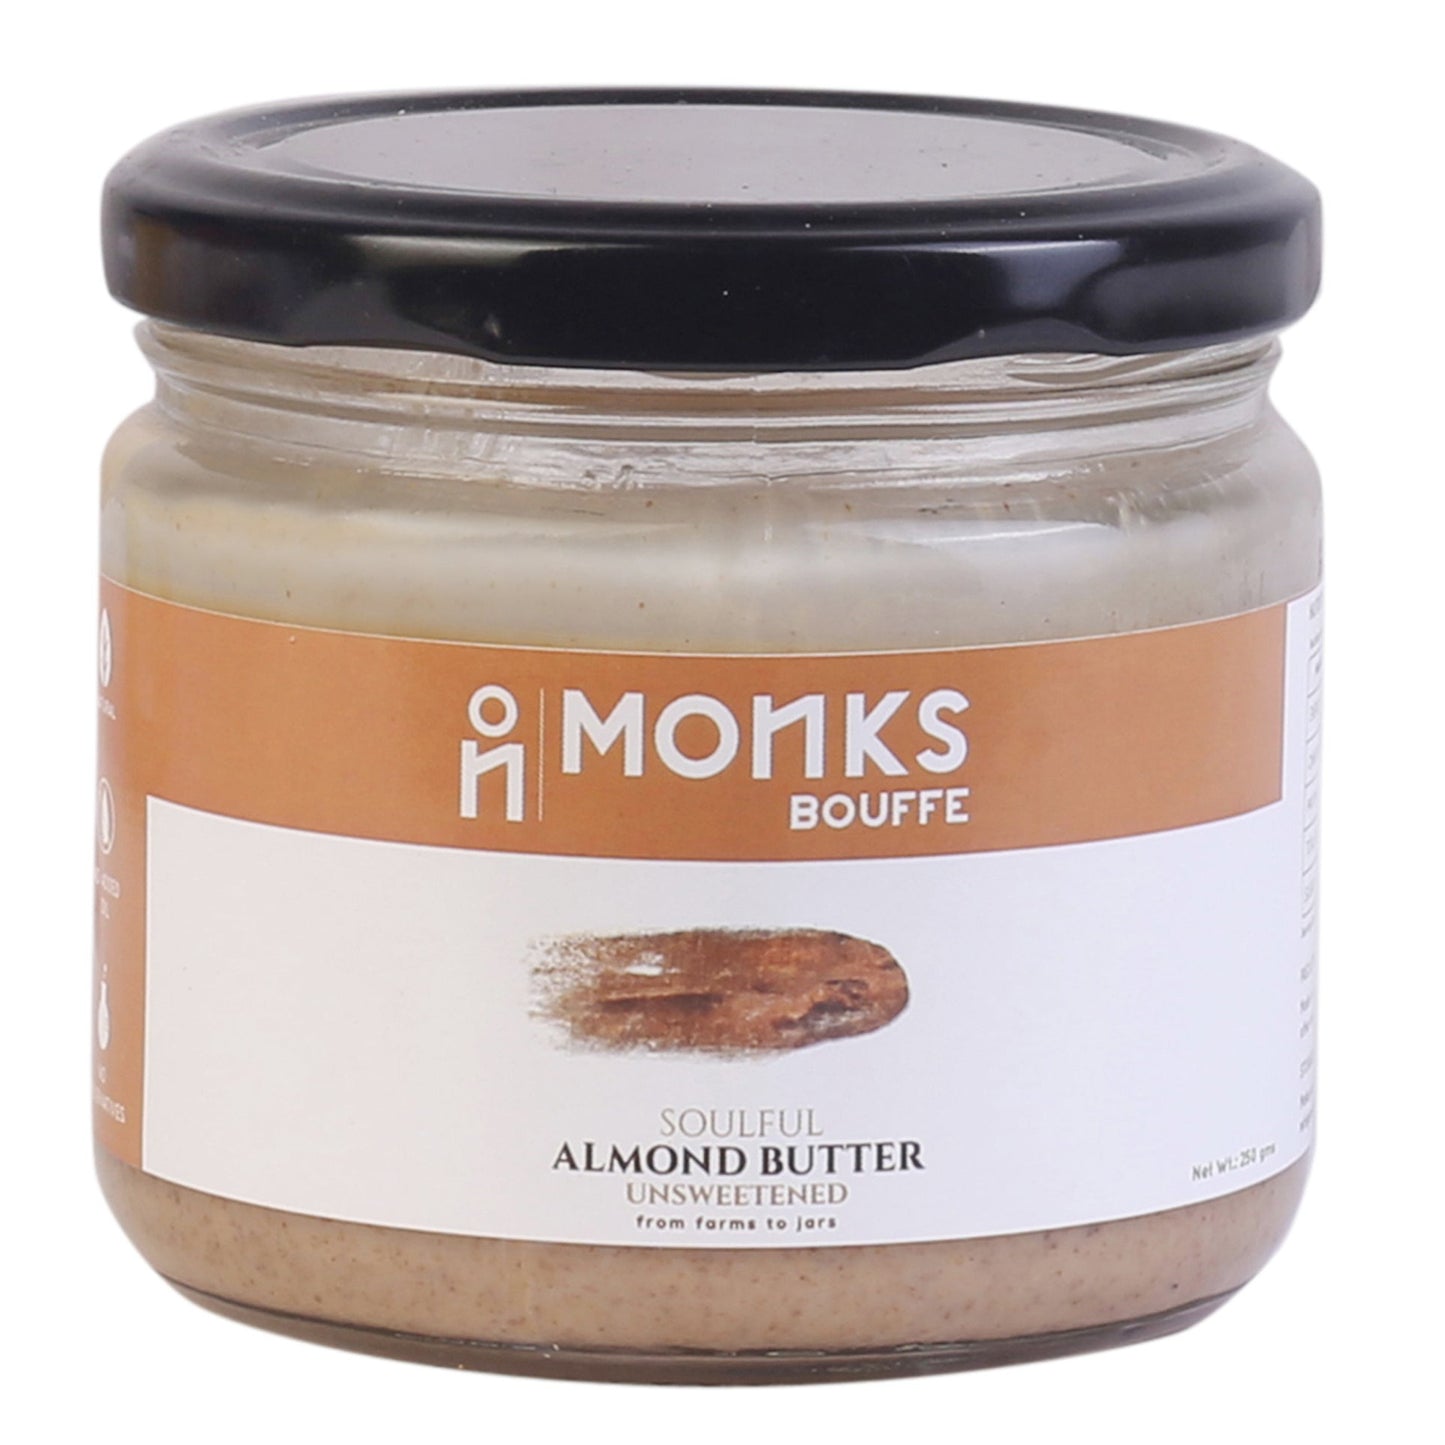 Soulful Creamy Almond Butter - Unsweetened - Monks Bouffe